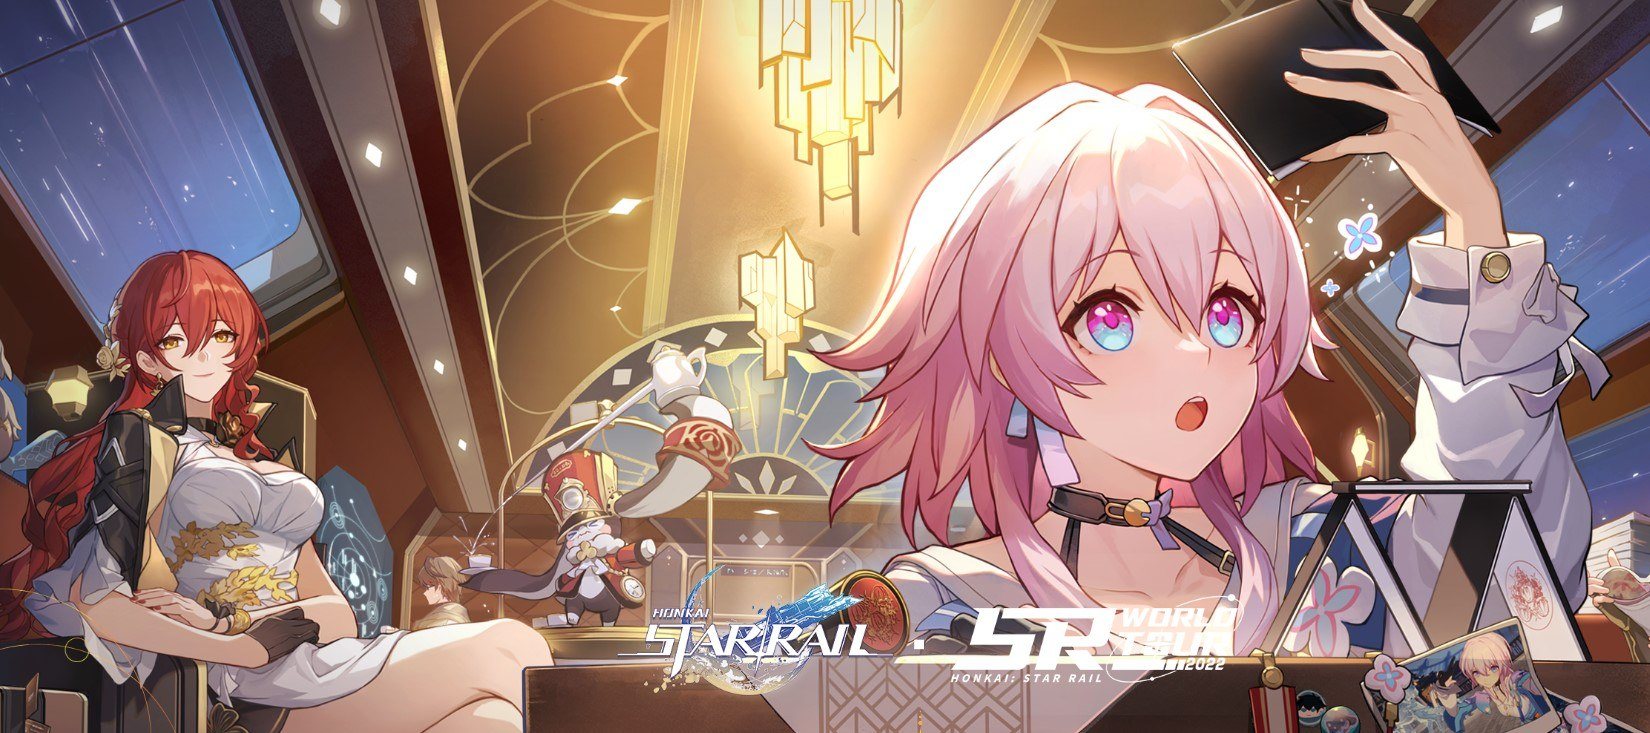 Honkai: Star Rail – Wszystko, co wiemy o turowej grze RPG autorstwa Hoyoverse